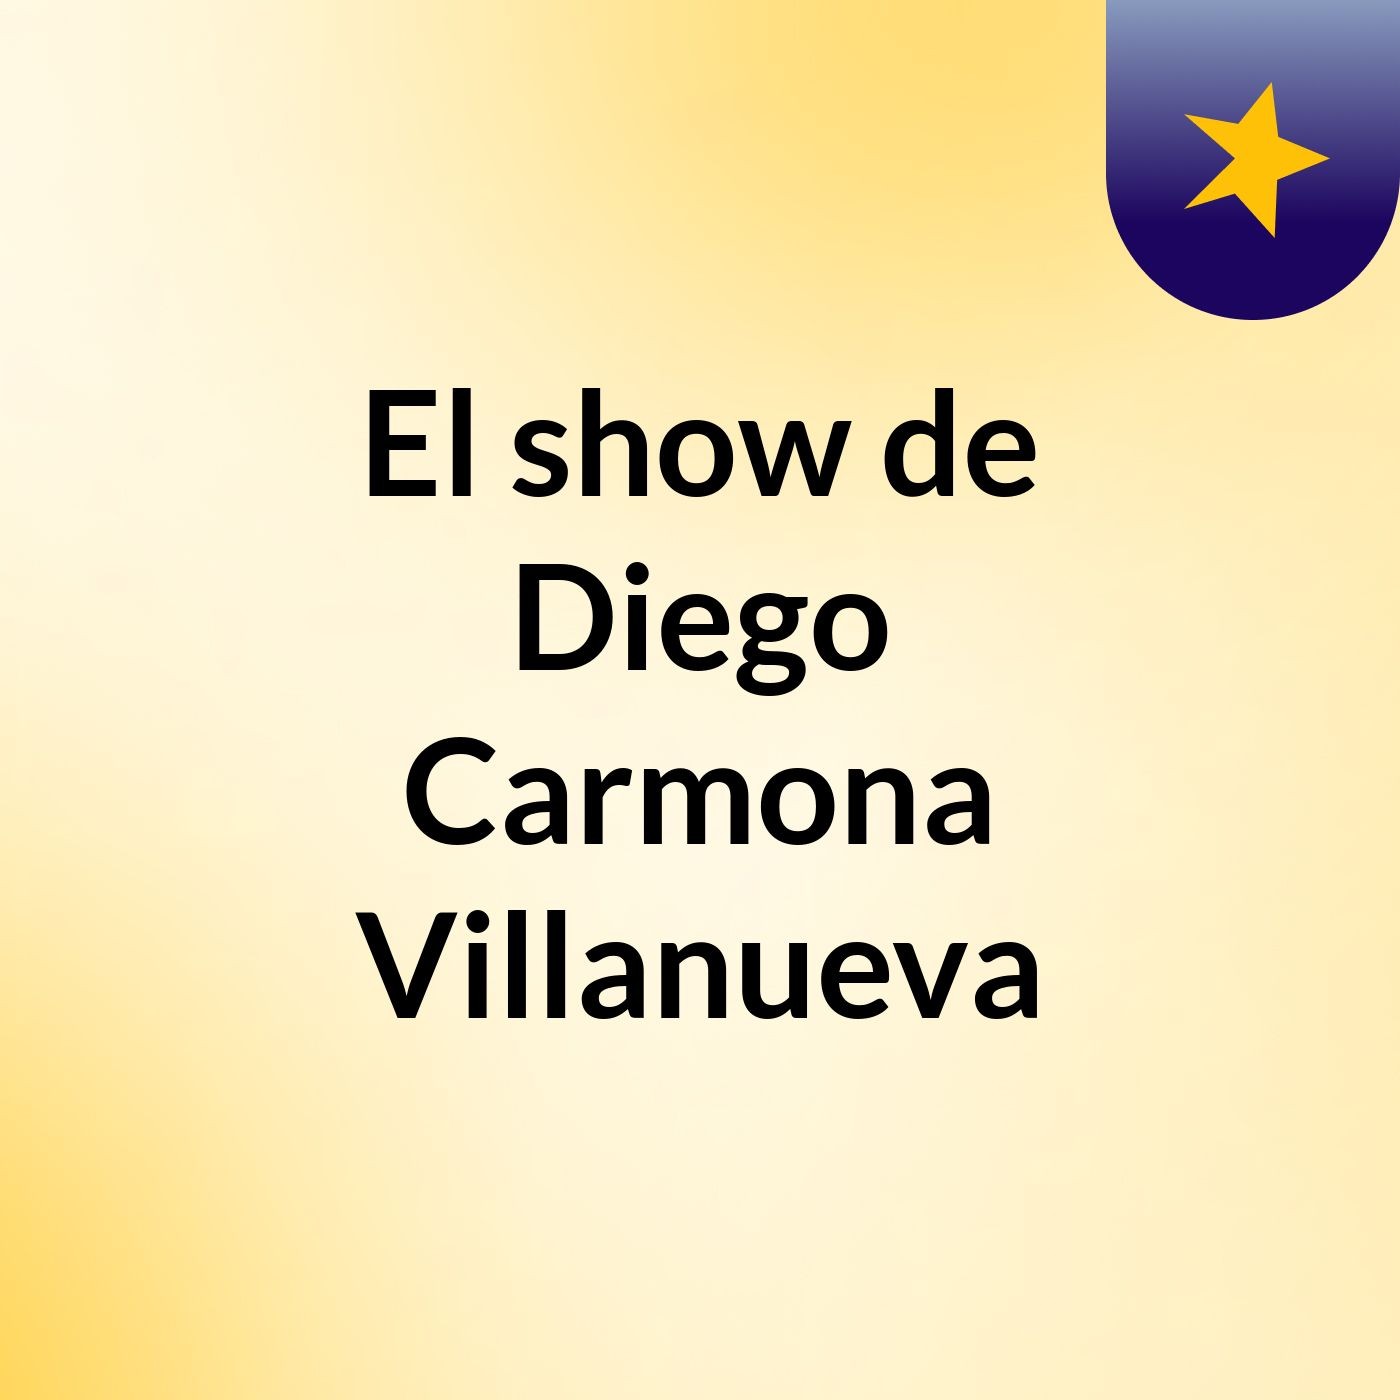 El show de Diego Carmona Villanueva